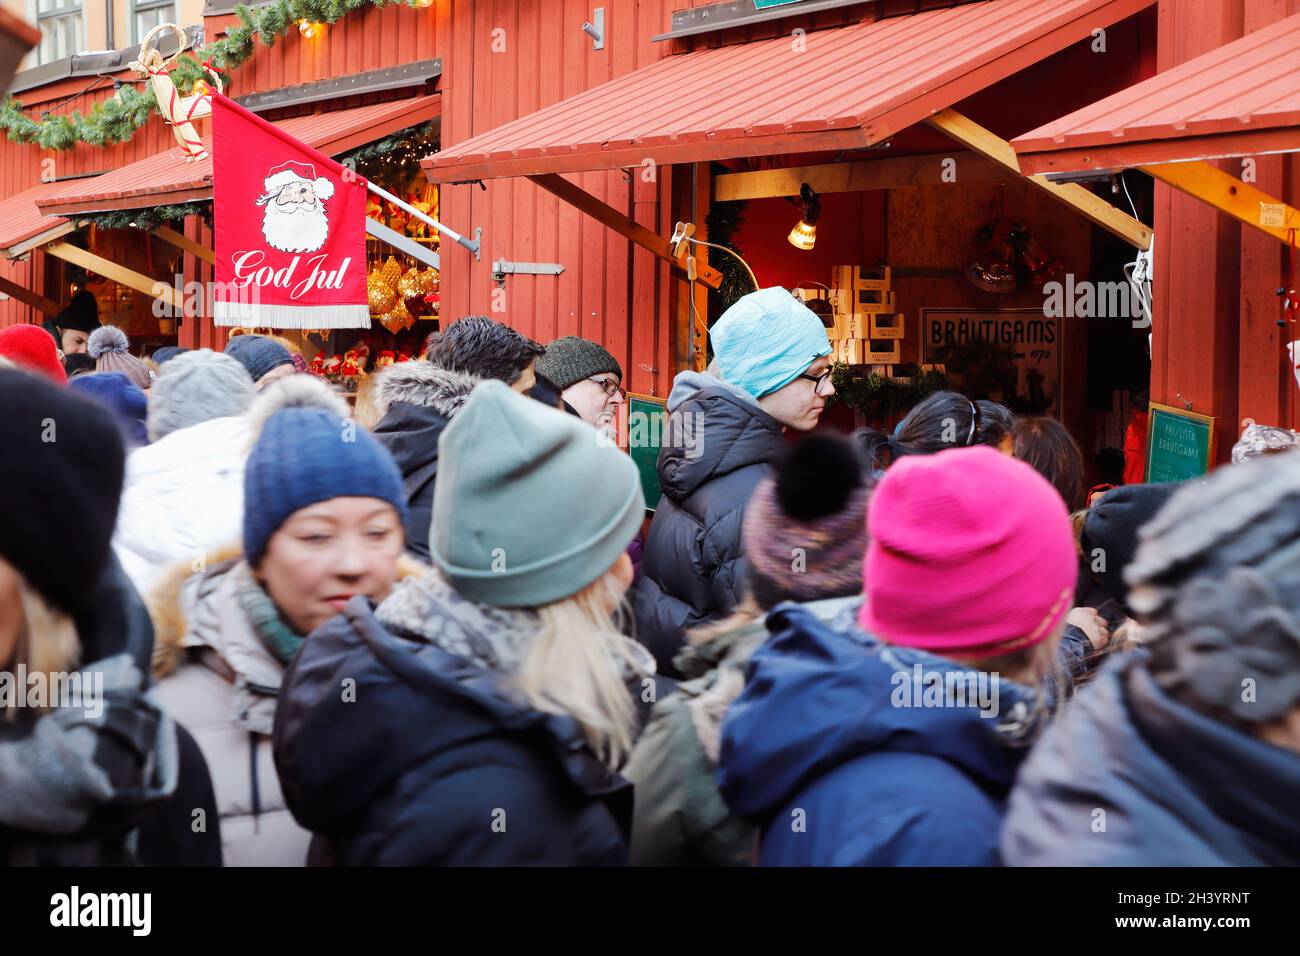 Stoccolma, Svezia - 30 novembre 2019: Affollato mercatino di Natale con bancarelle di mercato in piazza Stortorget nel quartiere della città vecchia. Foto Stock